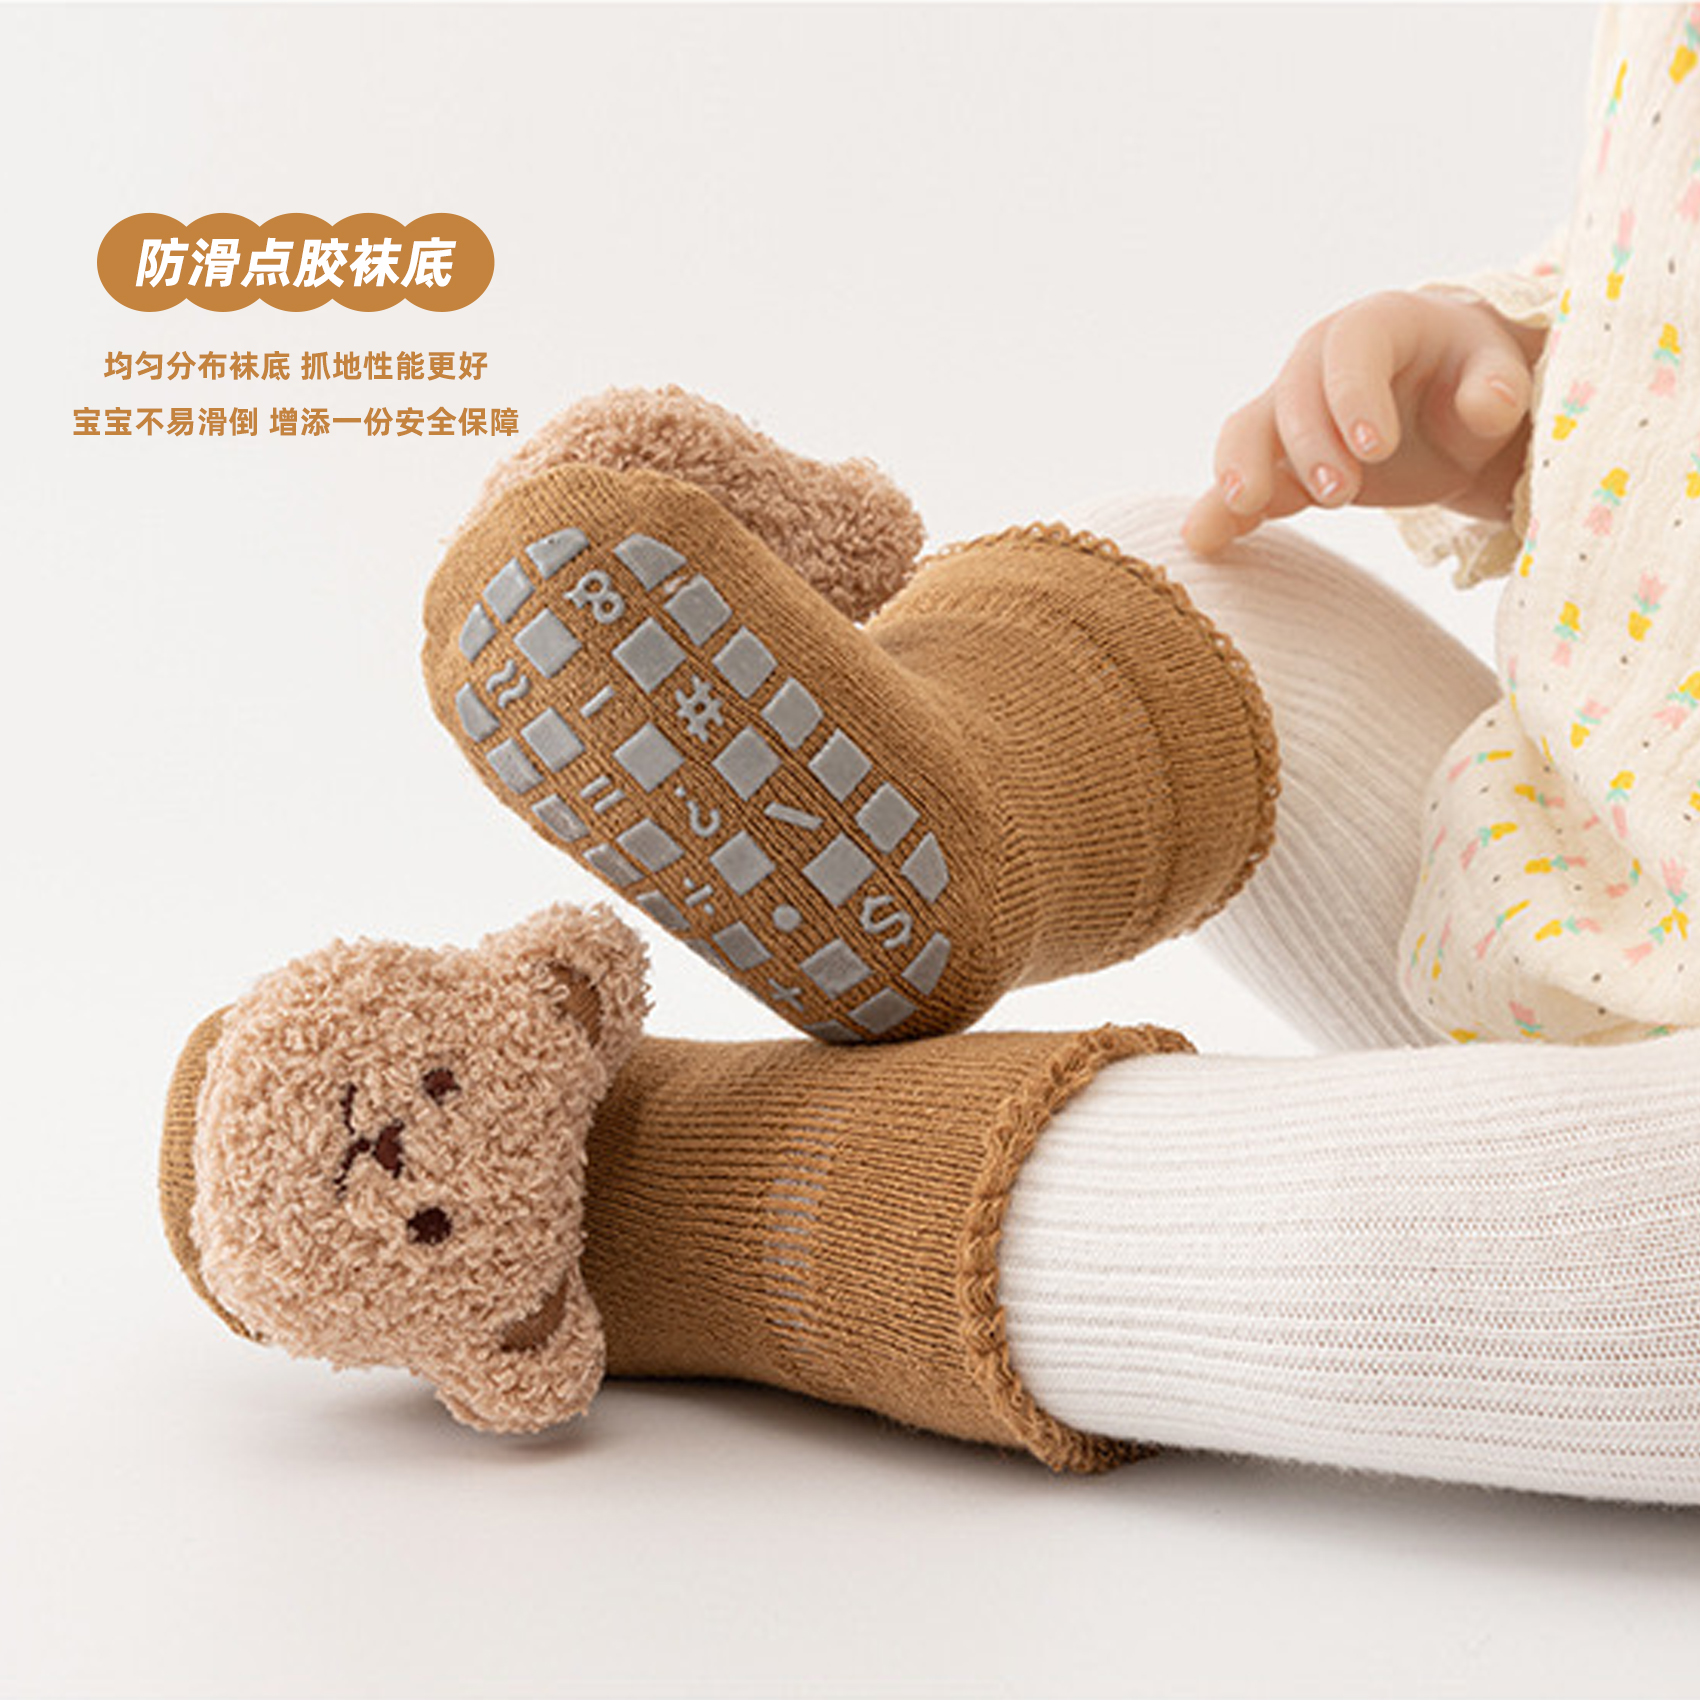 韩系可爱婴儿宝宝地板袜秋冬纯棉加厚毛圈室内学步袜防滑软底鞋袜